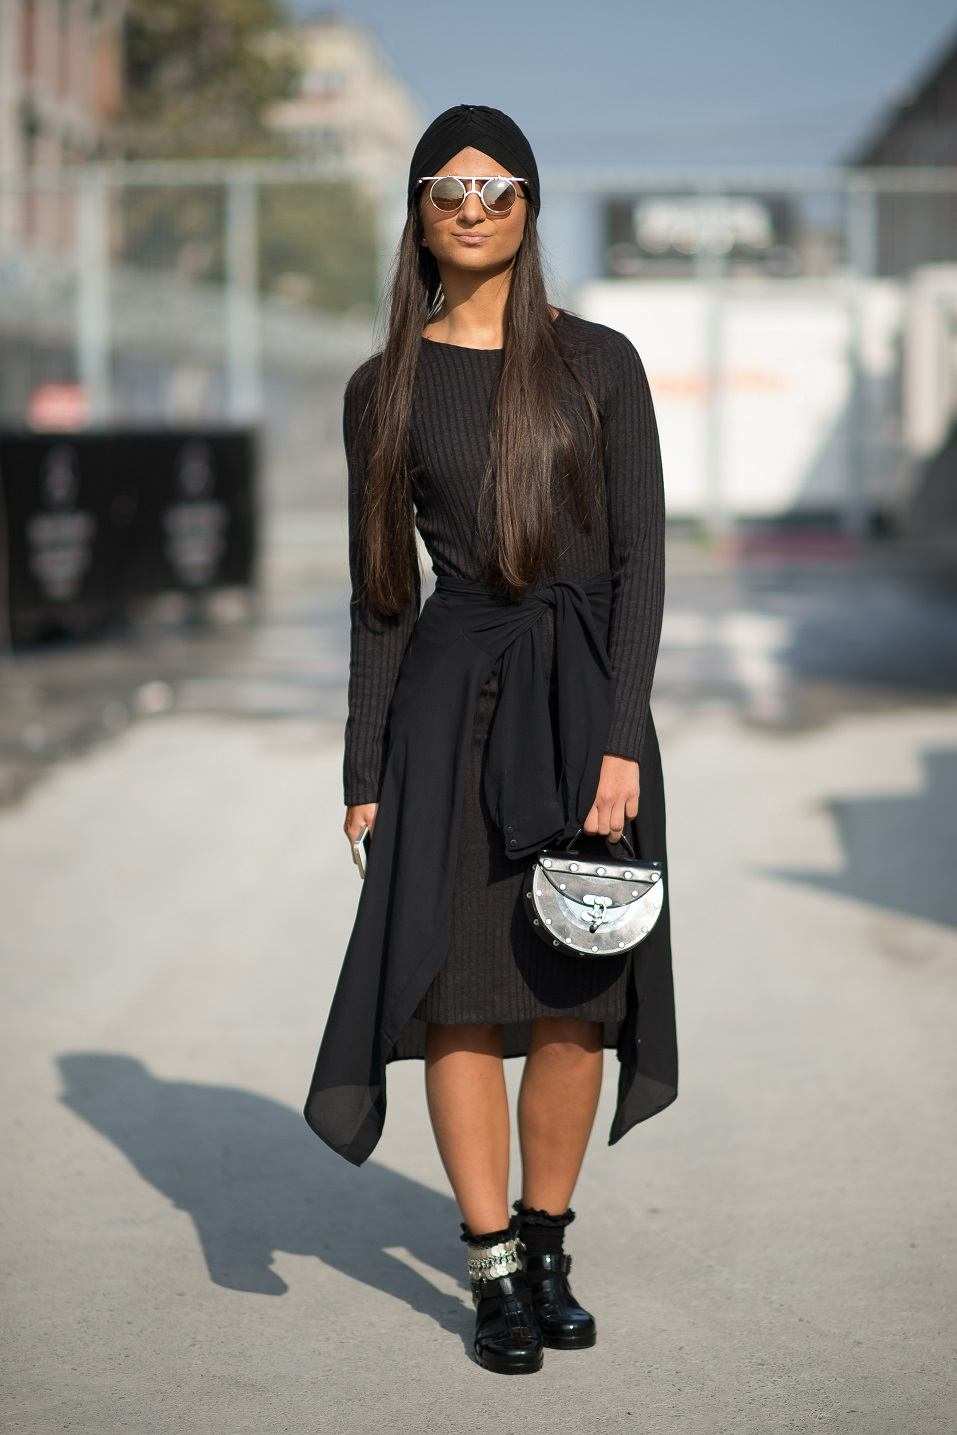 Schwarzes Kleid kombinieren lässig Herbst Outfits Modetrends 2019